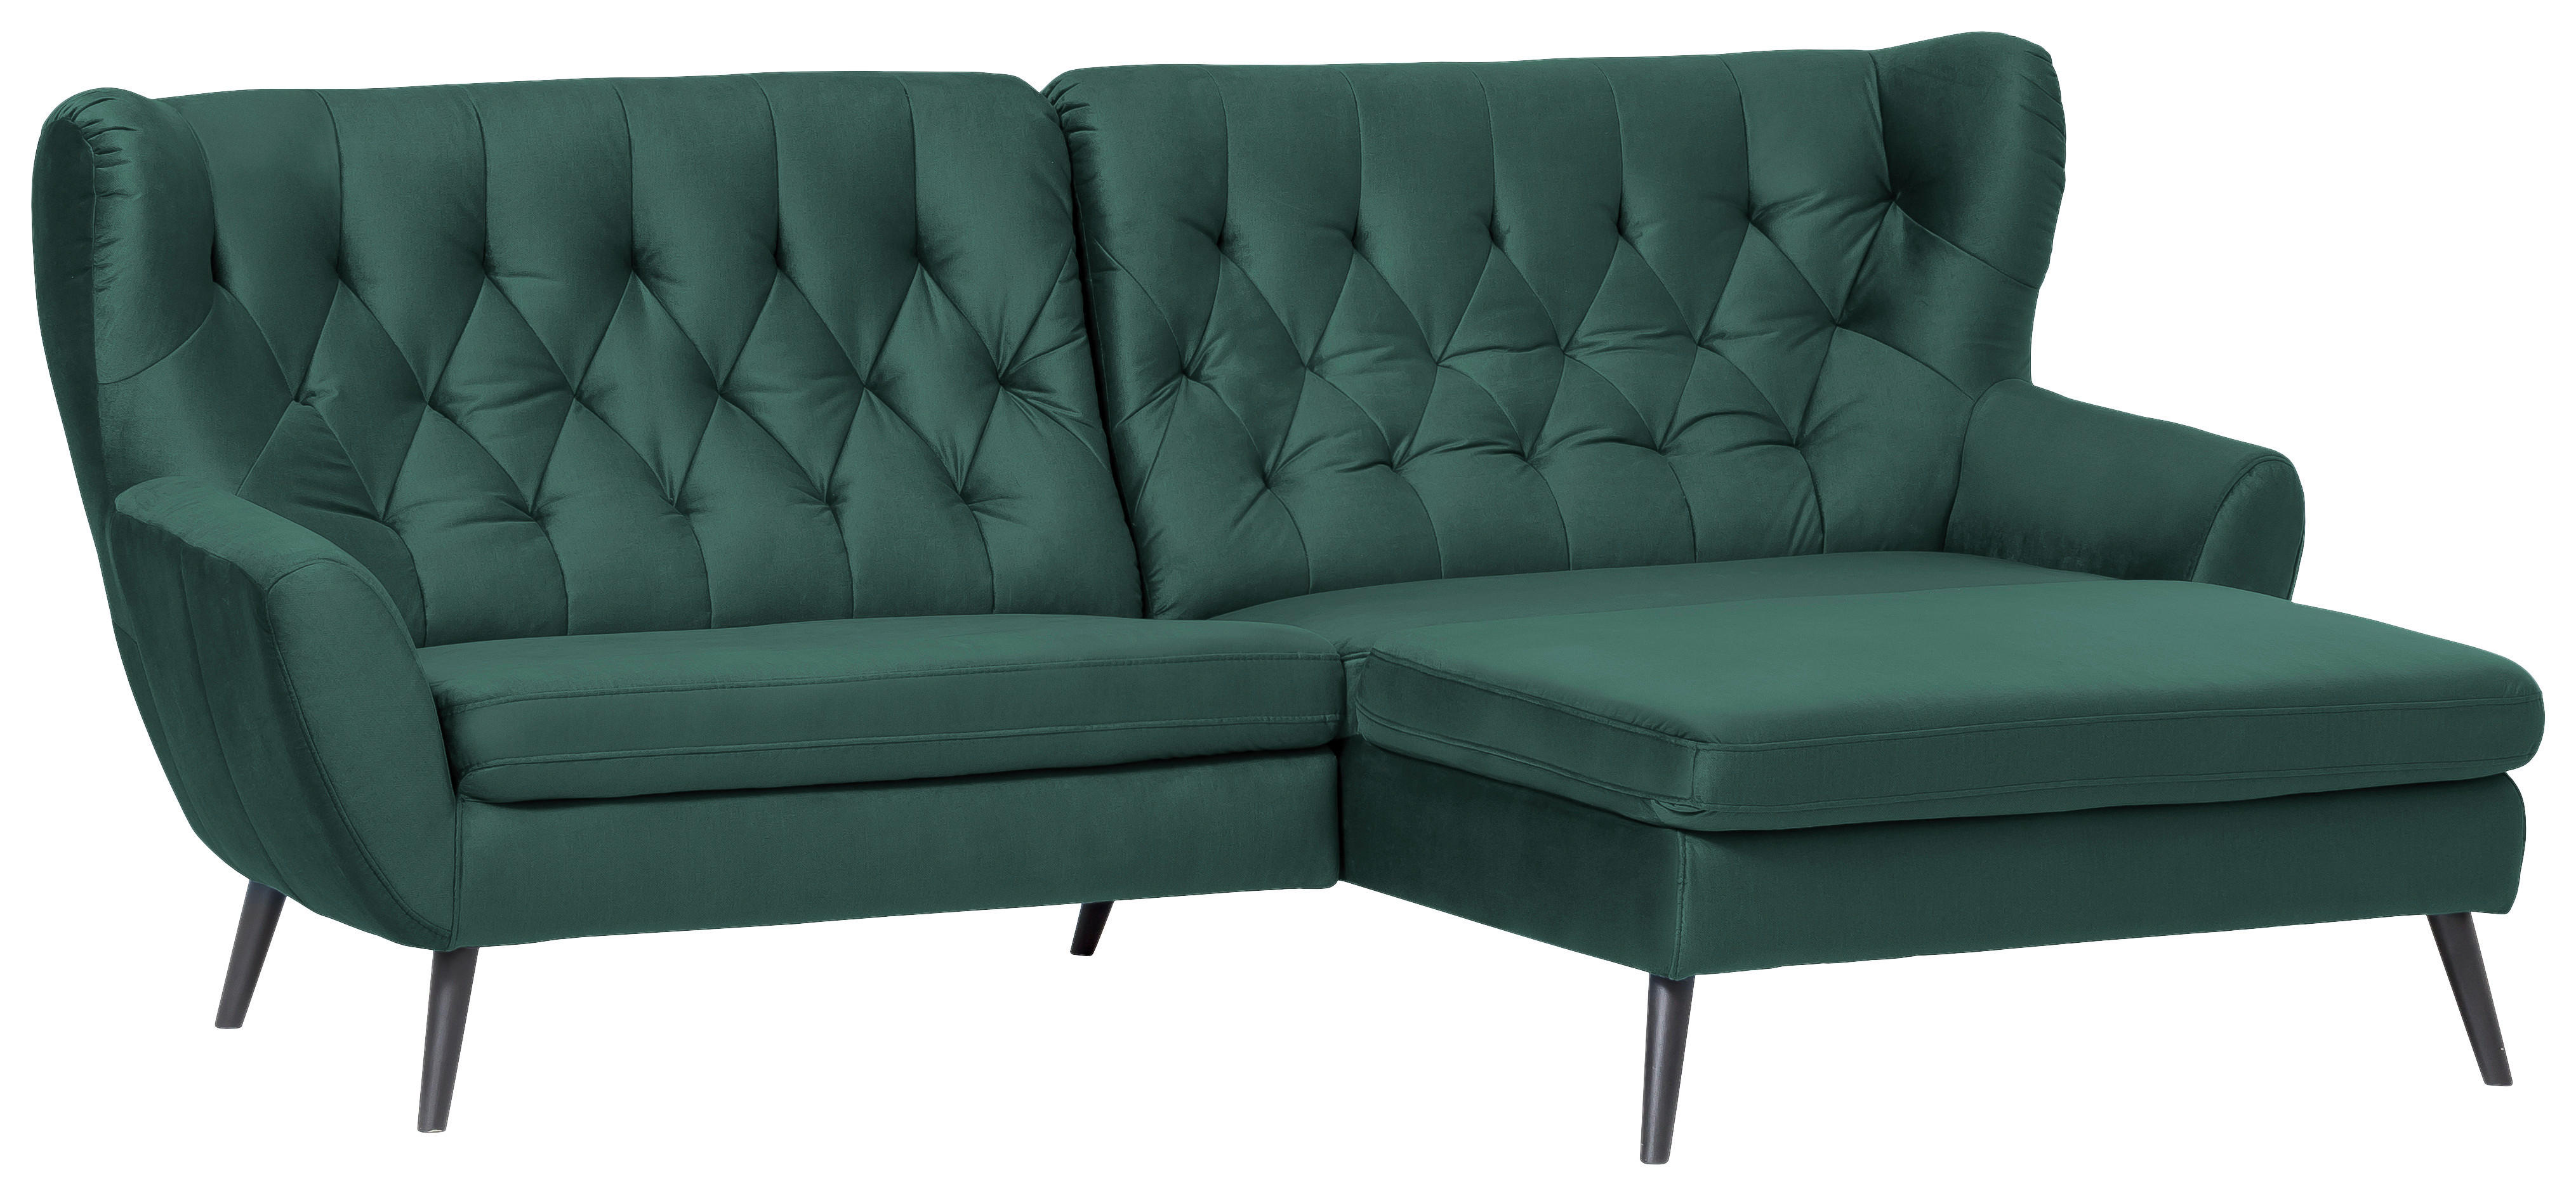 2-Sitz-Sofa-Bett, Komfort und Stil, Gestell: Metall, Stoff: Polyester, Größe: 133x78x78cm, Umwandelbar in ein Bett, Creme Retro - Emob